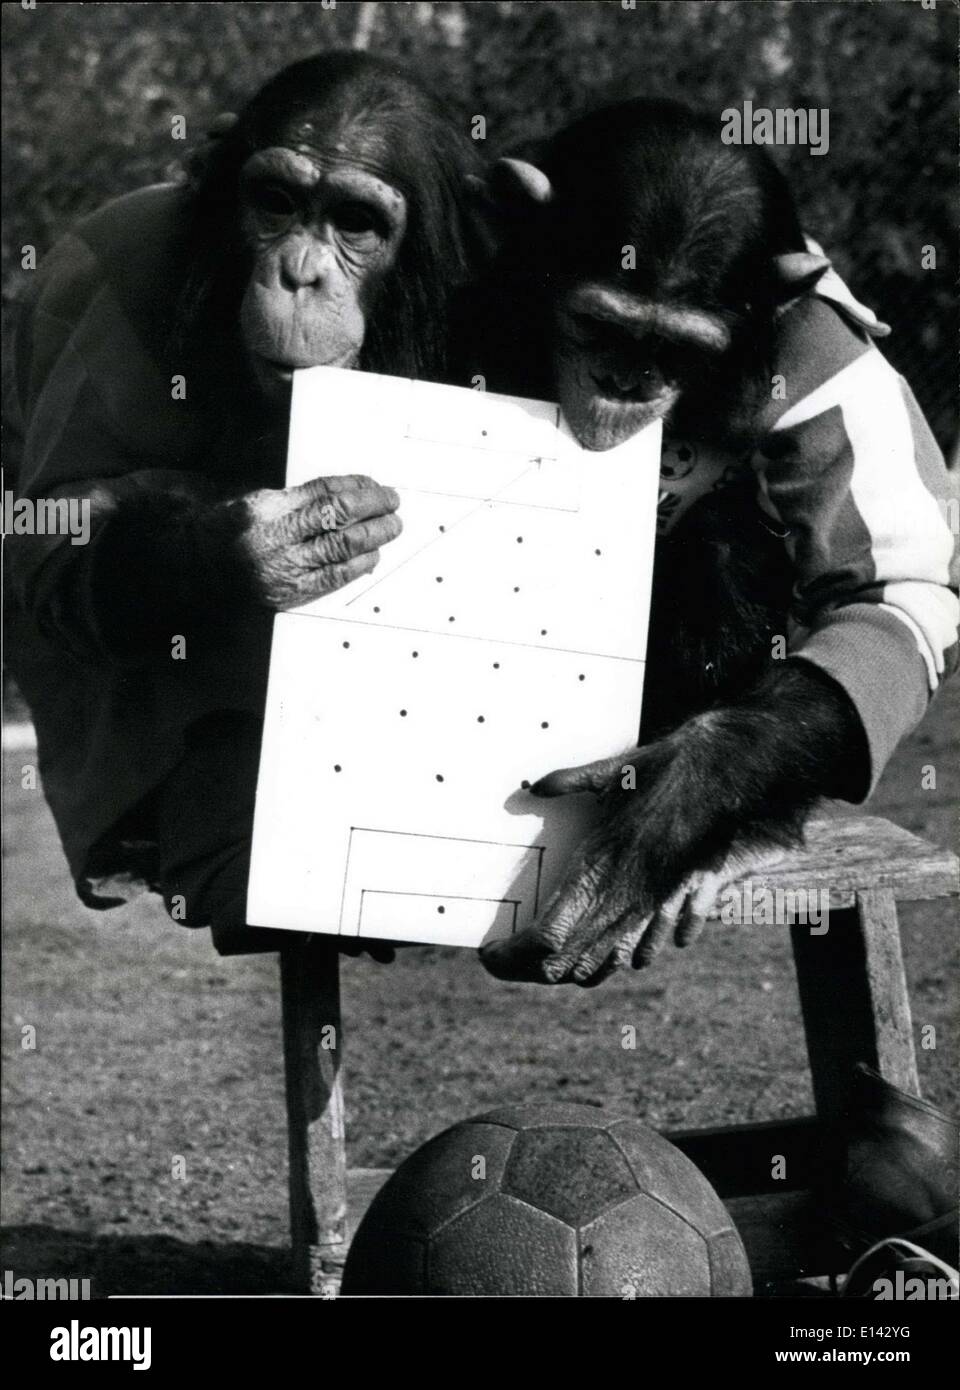 Marzo 31, 2012 - Estrategia de alto nivel las conversaciones antes de que el juego.La copa del mundo puede ser más, Bout no para los chimpancés: Monkey business sobre caries o no, la temporada de fútbol. Estos dos chimpancés en el zoológico de Munich, Alemania, Hallabrunn aún estaría feliz de ser fútbol nuevos superstars. Por supuesto que el fútbol debe ser jugado con los pies, las manos, pero no vamos a olvidar y perdonar que los chimpancés que no son los mejores jugadores del mundo. Pero hacen un excelente portero, con las ventajas añadidas de utilizar a gatas! Foto de stock